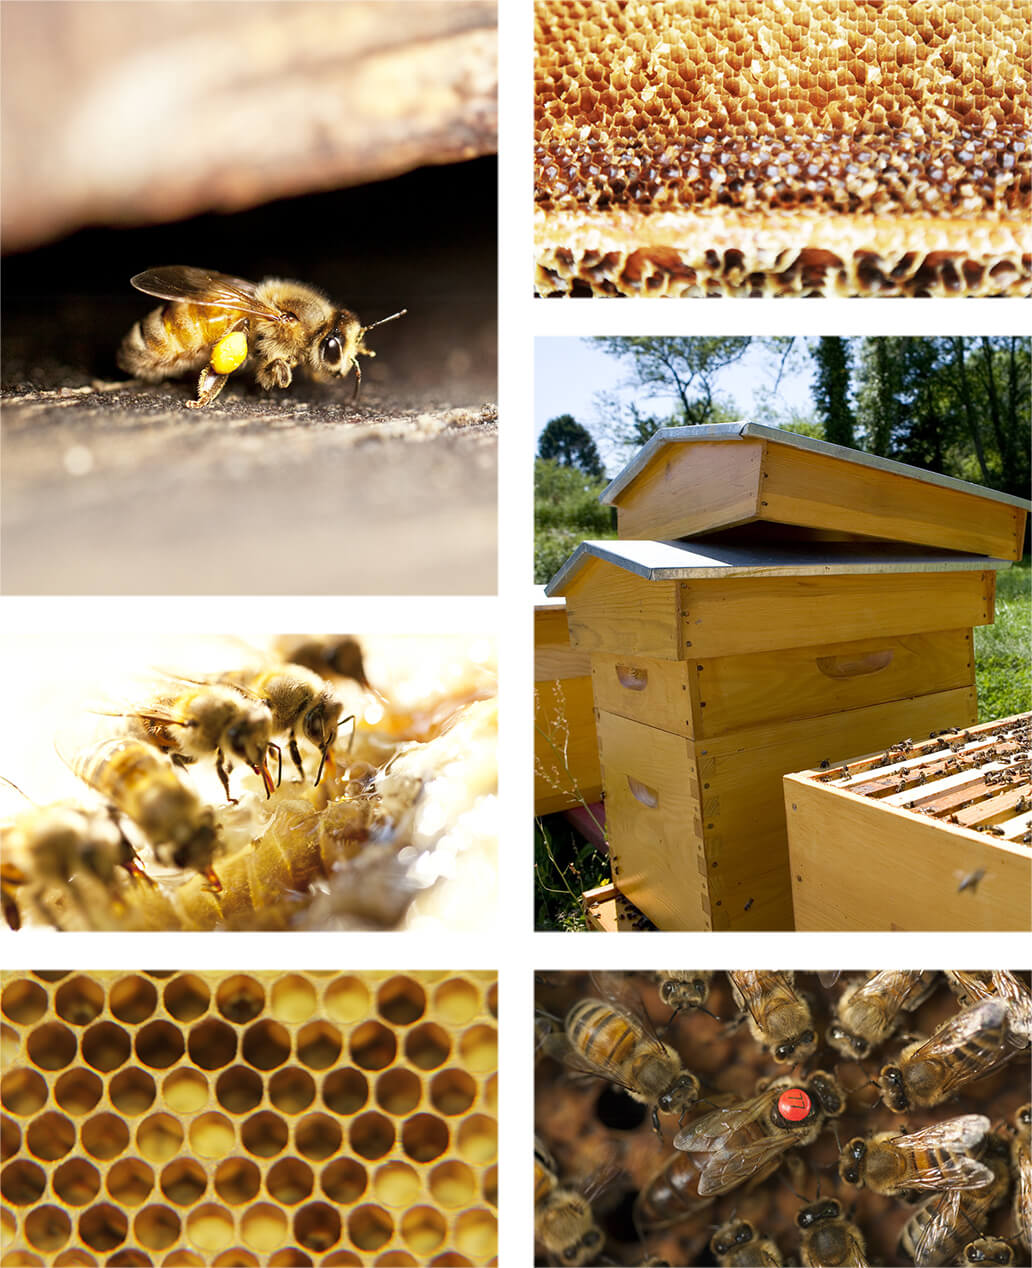 Les différents métiers d'une abeille